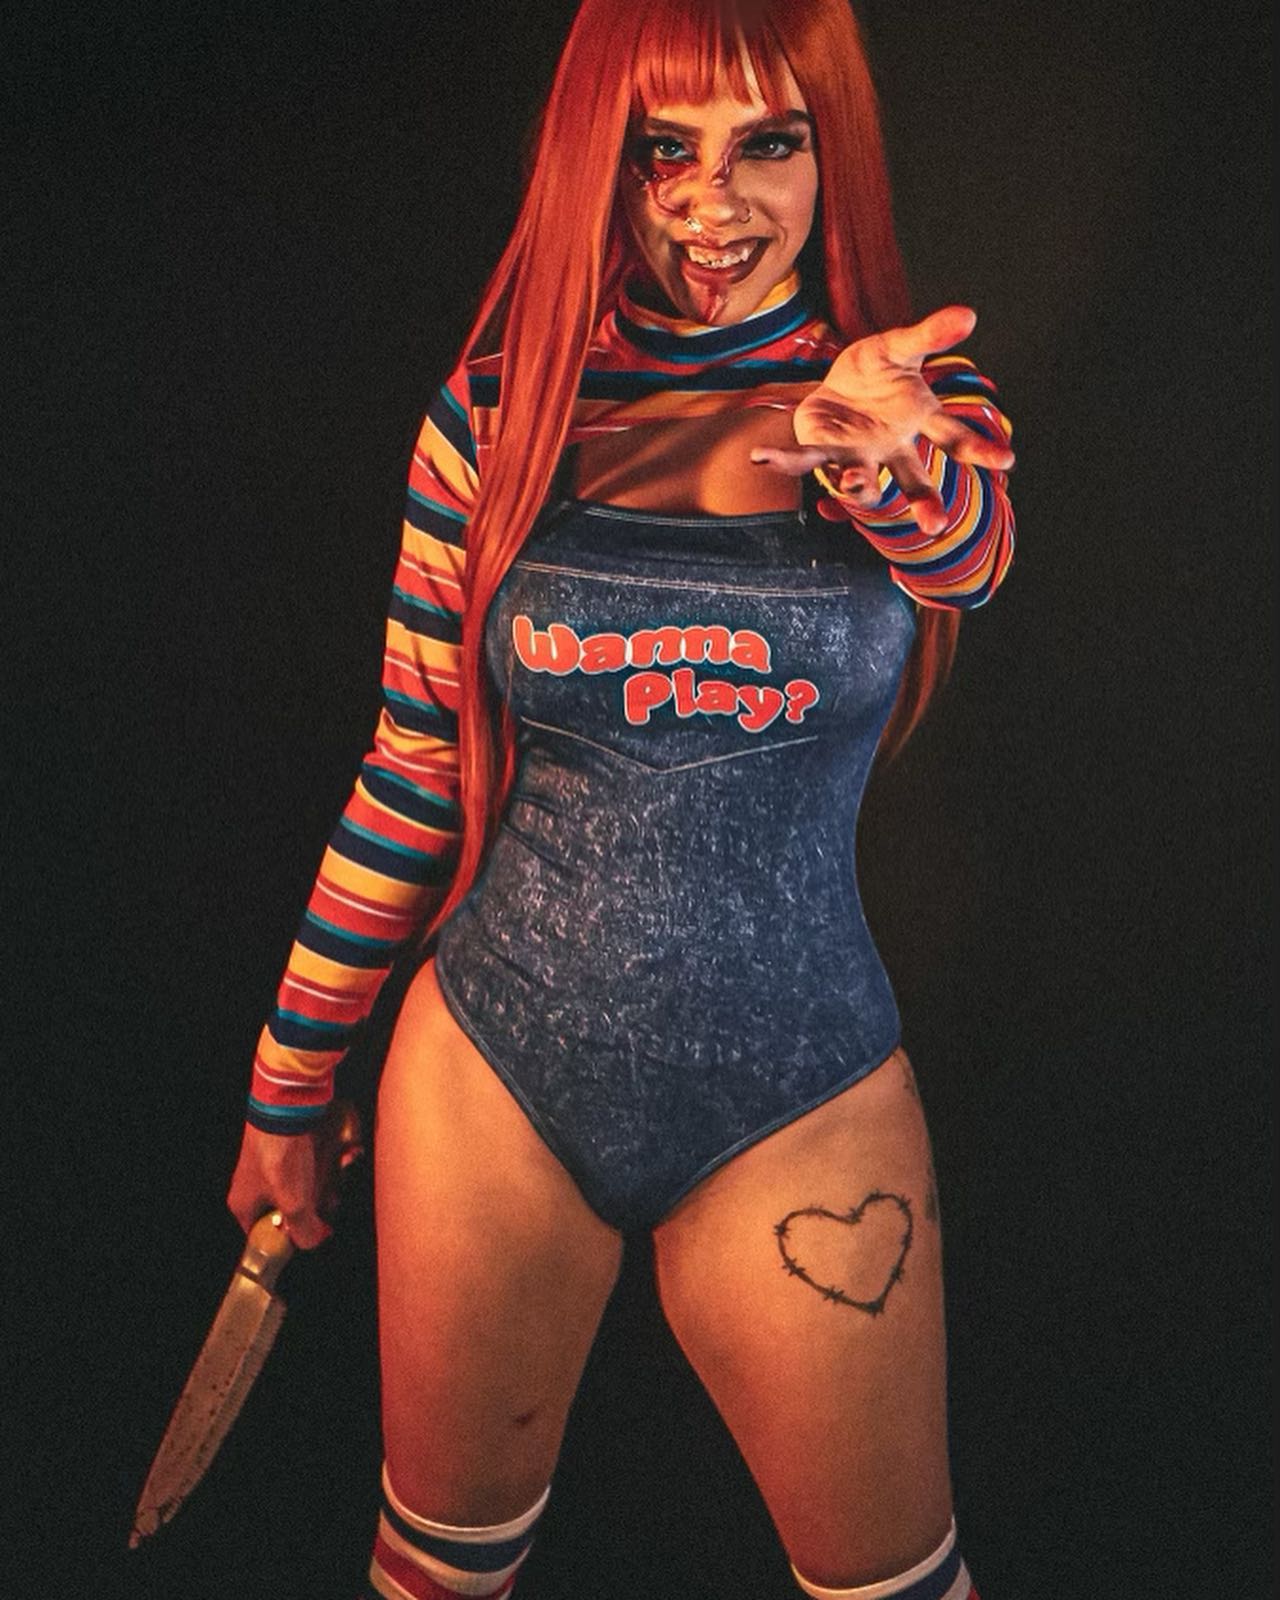 Hi I’m Chucky, Wanna Play?🔪
⭒
⭒
⭒
#explore #explorepage #cosplay #chucky #halloween #horror